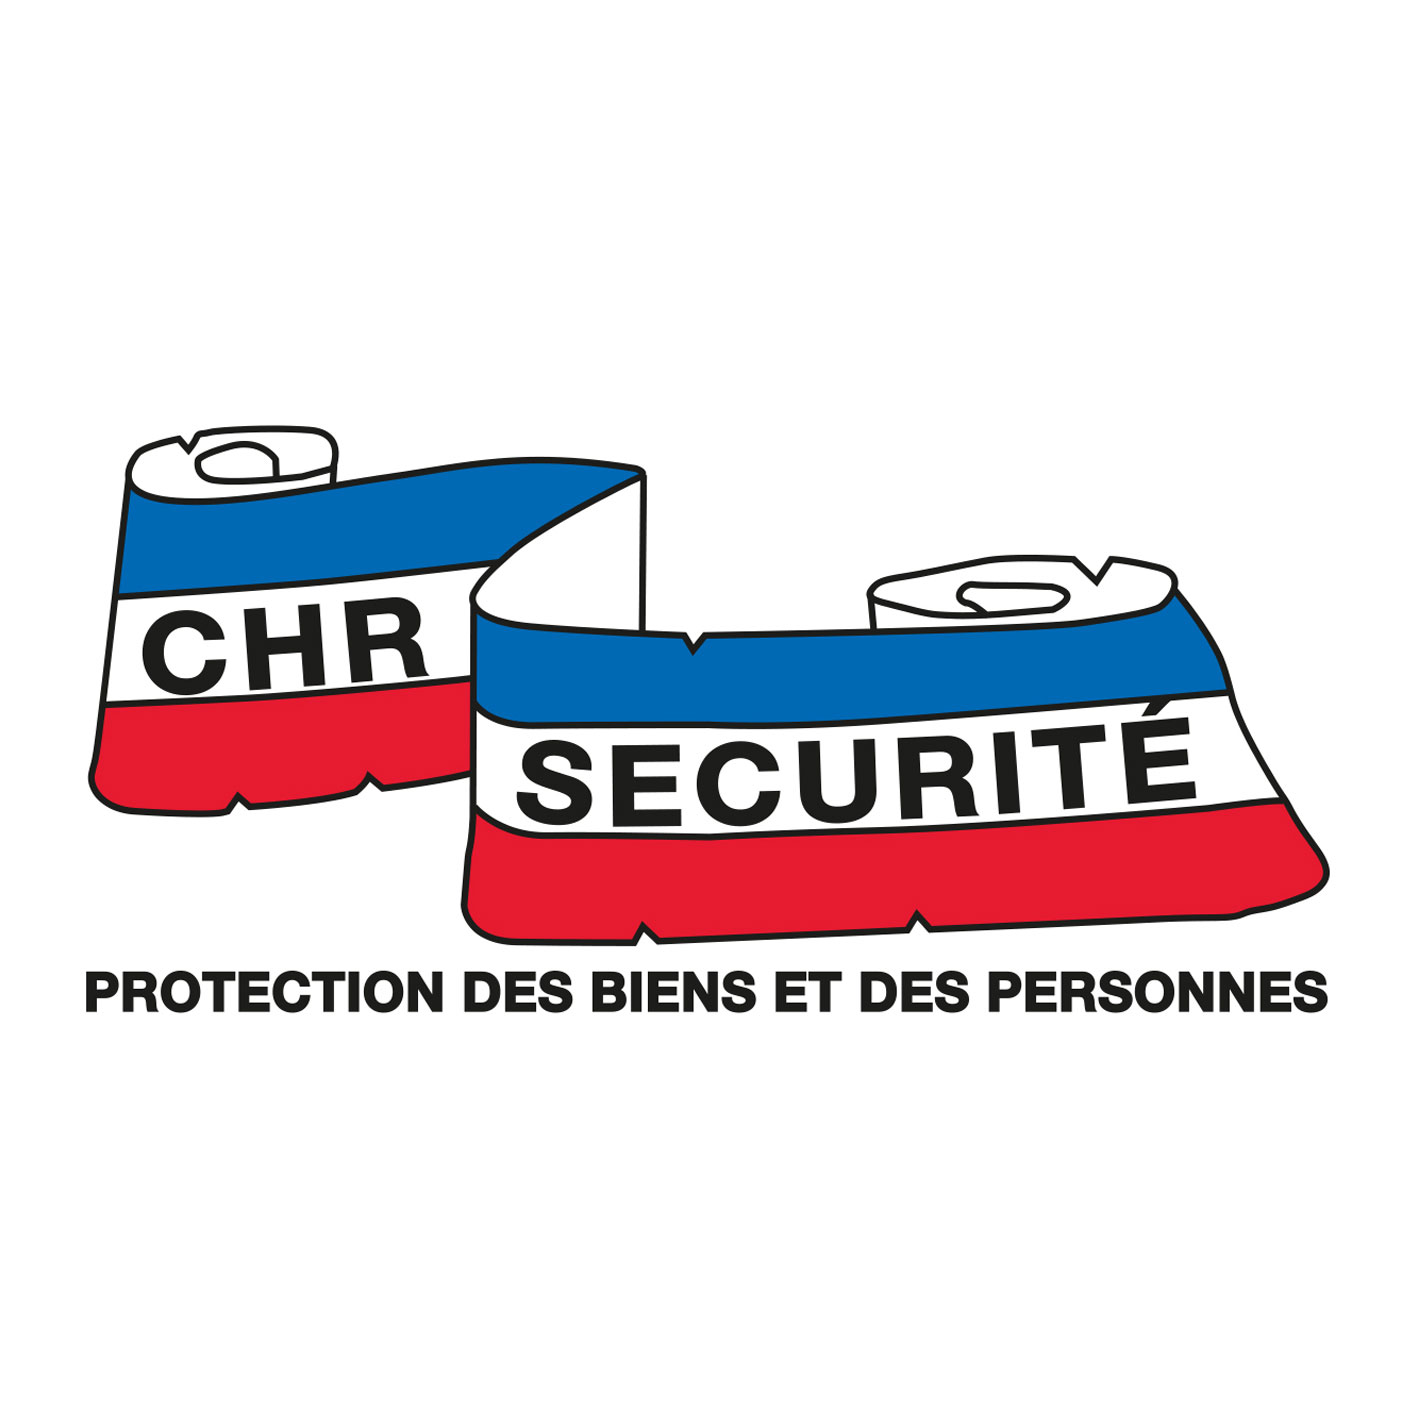 CHR Securite